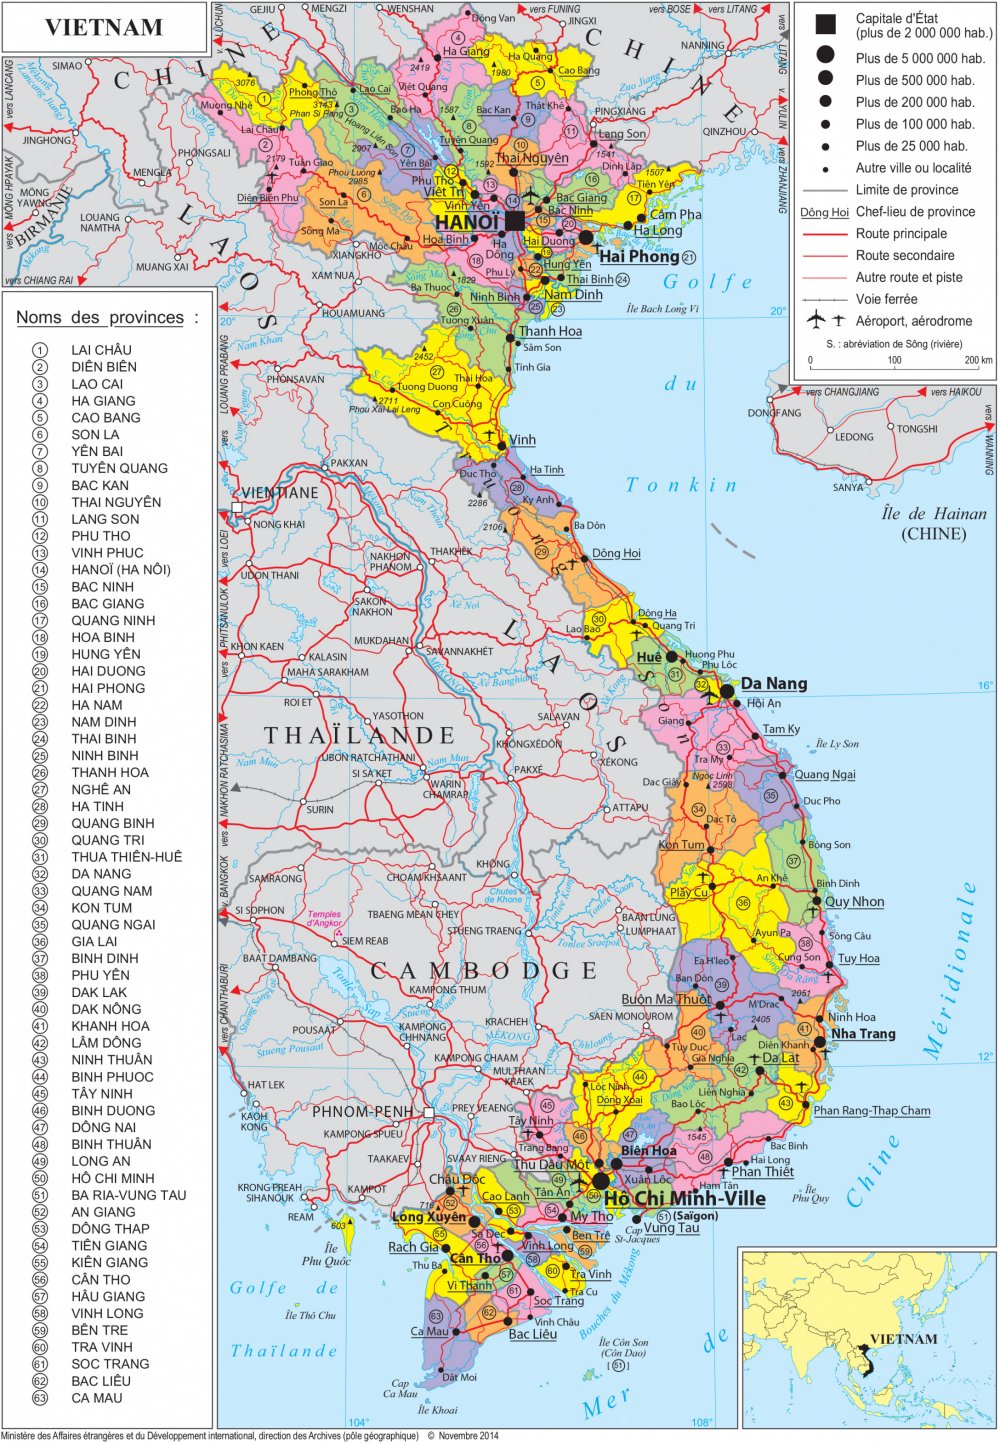 Bản đồ hành chính Việt Nam cung cấp một cái nhìn tổng quan về hệ thống chính trị của đất nước. Hình ảnh liên quan sẽ giúp bạn hiểu rõ hơn các đơn vị hành chính và địa lý của Việt Nam, là một điểm khởi đầu tốt để khám phá đất nước.